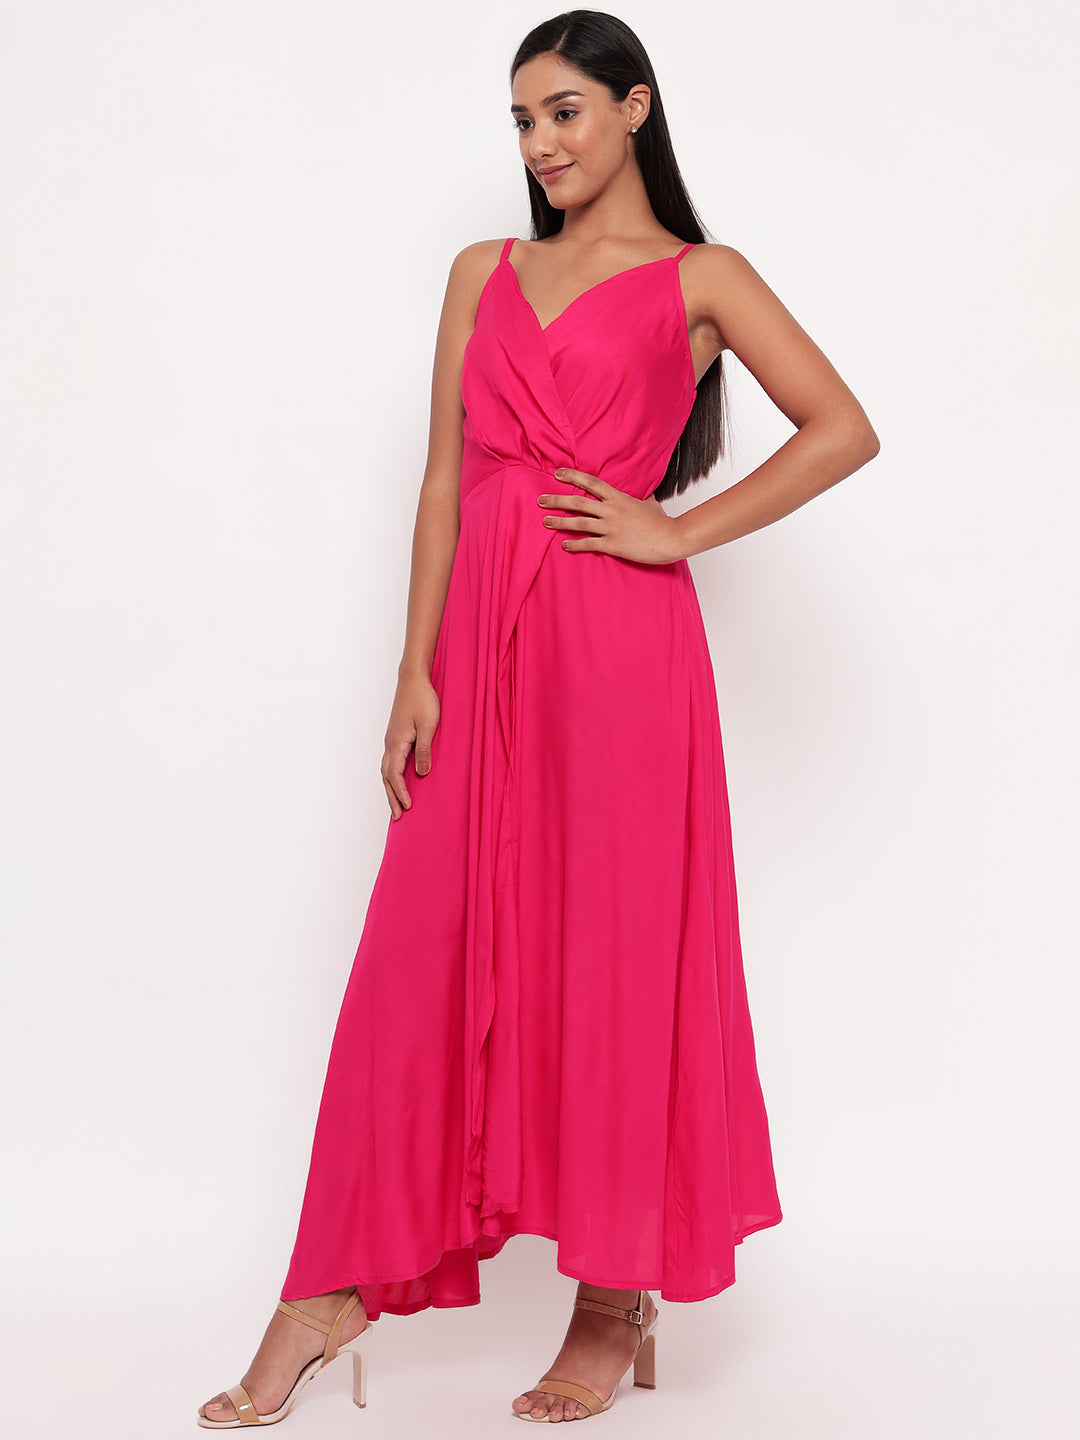 Aawari Casual Pink Dress